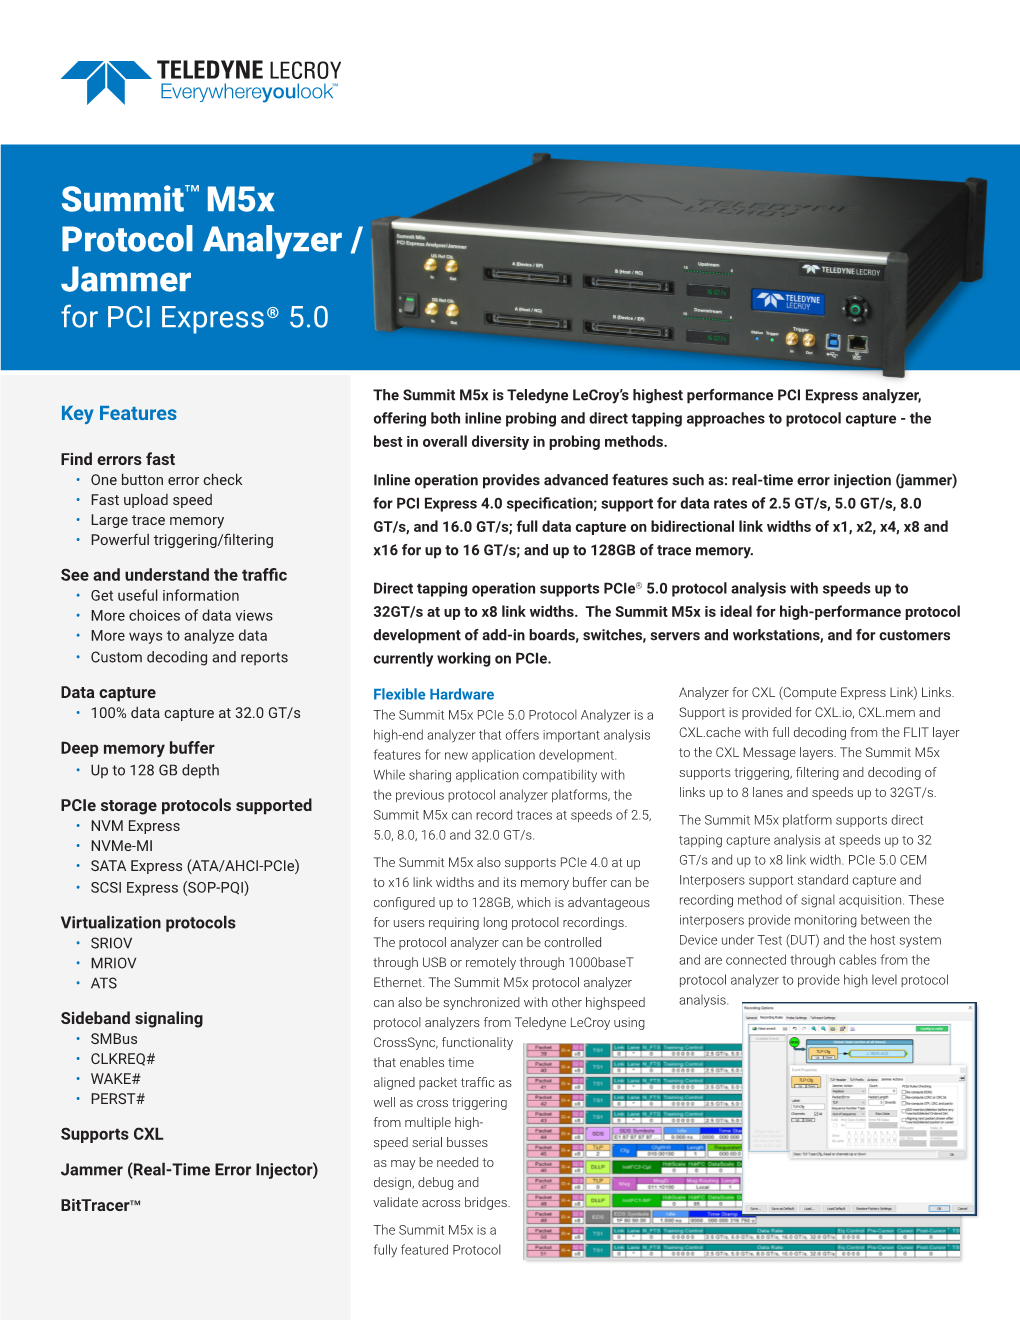 Summit™ M5x Protocol Analyzer / Jammer for PCI Express® 5.0